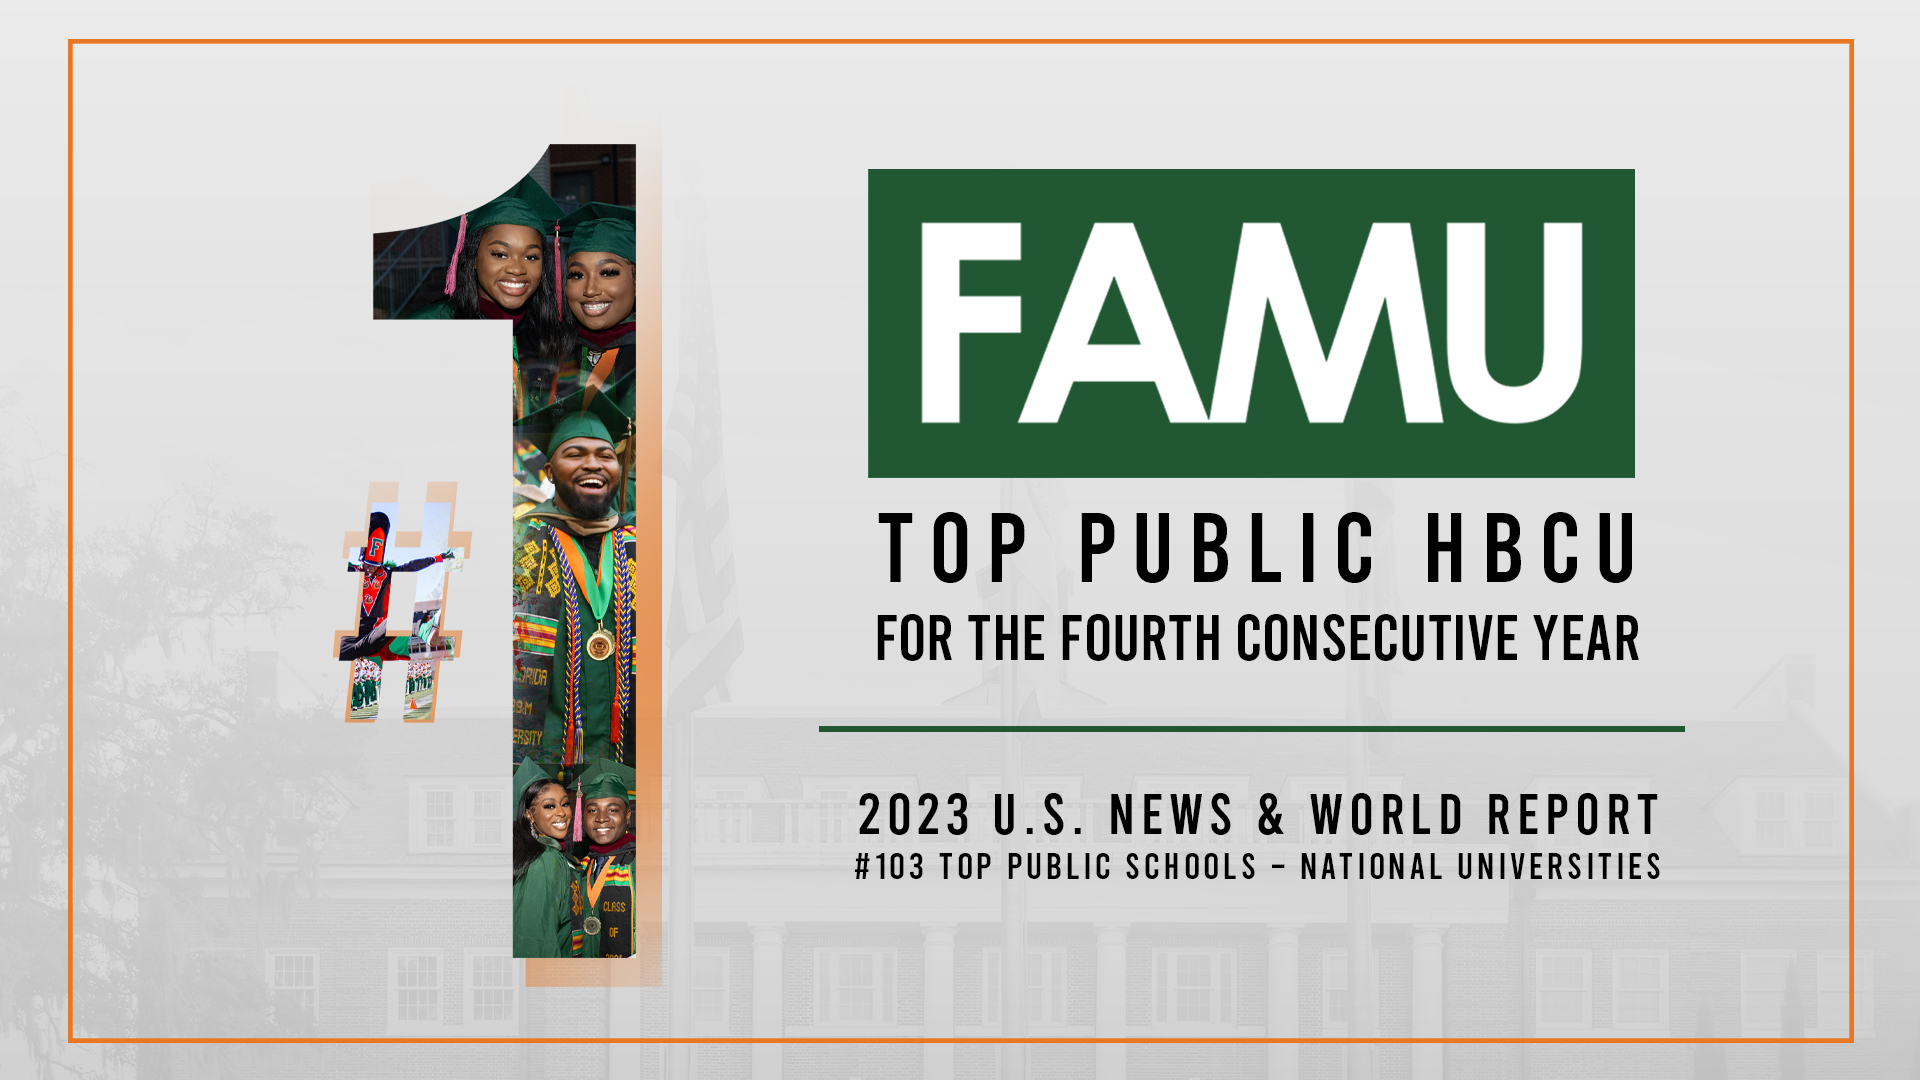 FAMU: Florida A&M University